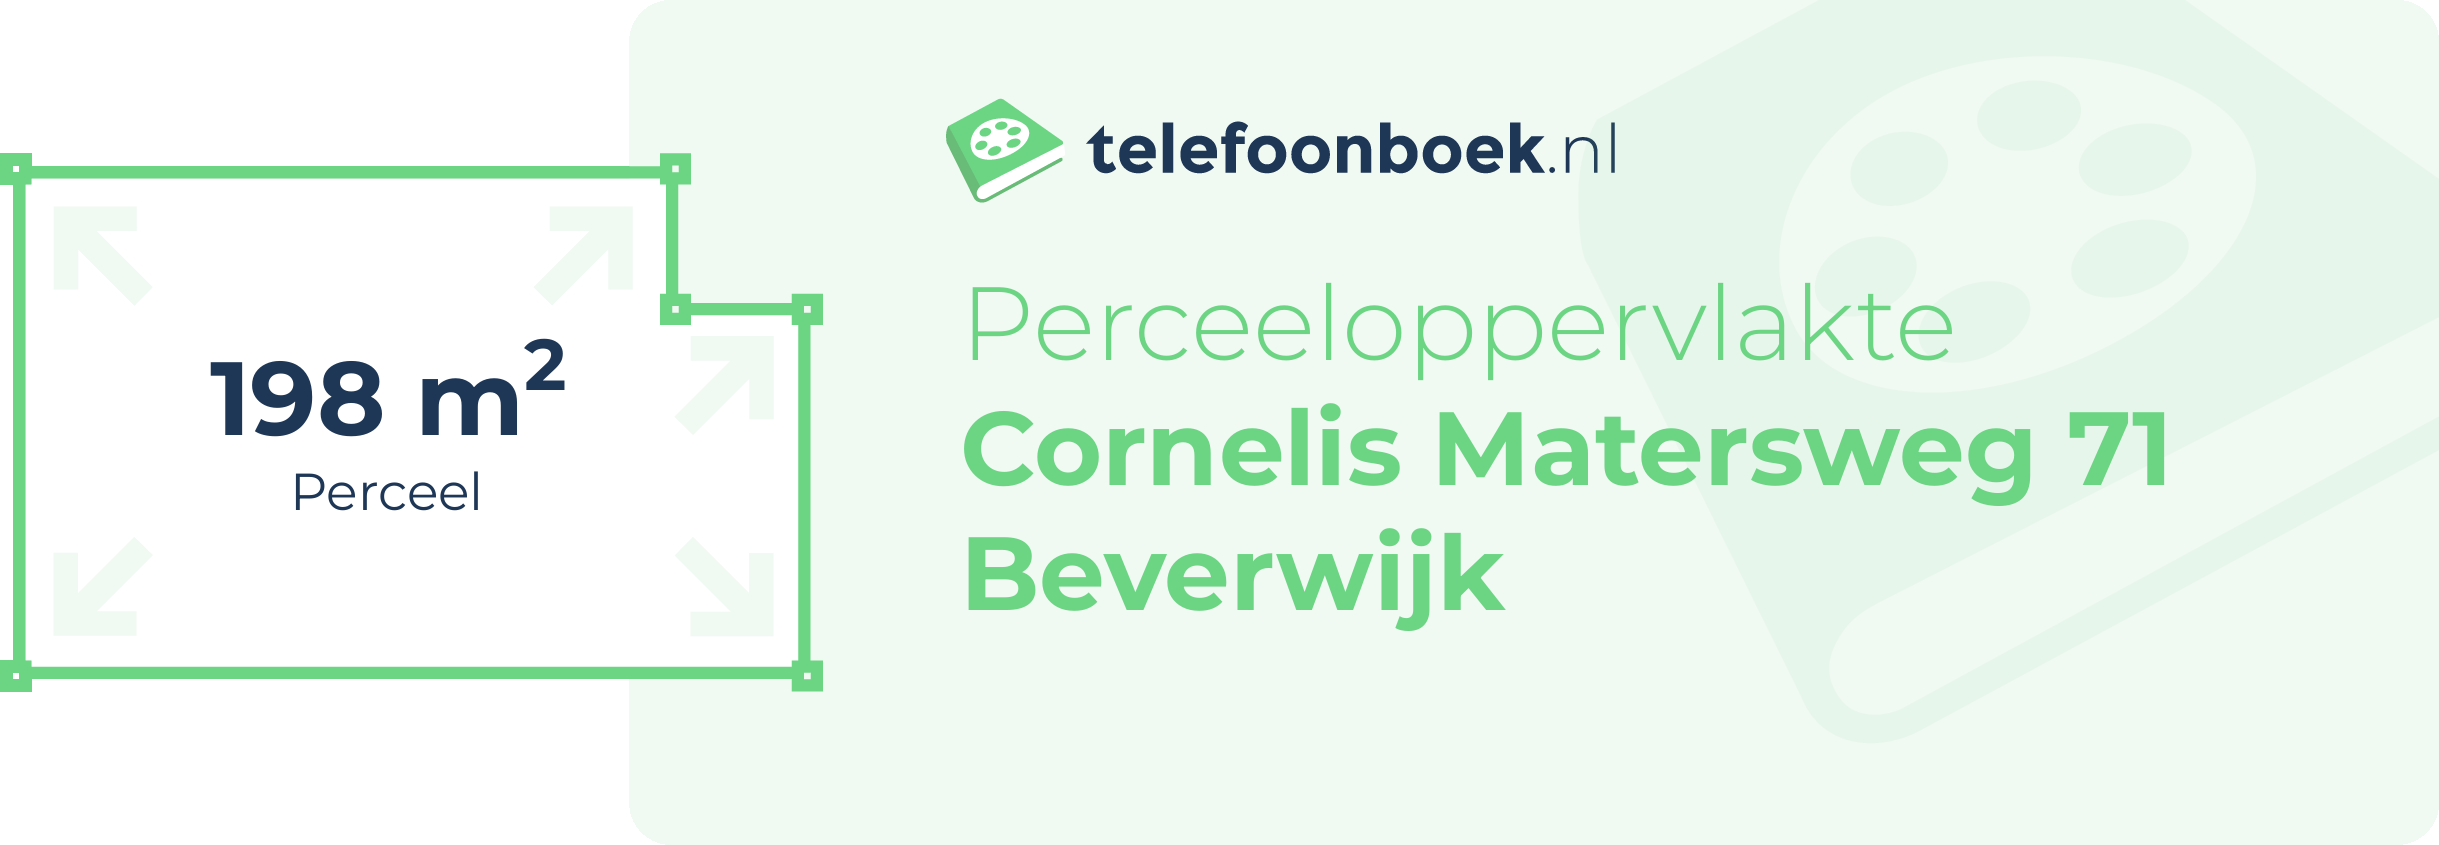 Perceeloppervlakte Cornelis Matersweg 71 Beverwijk